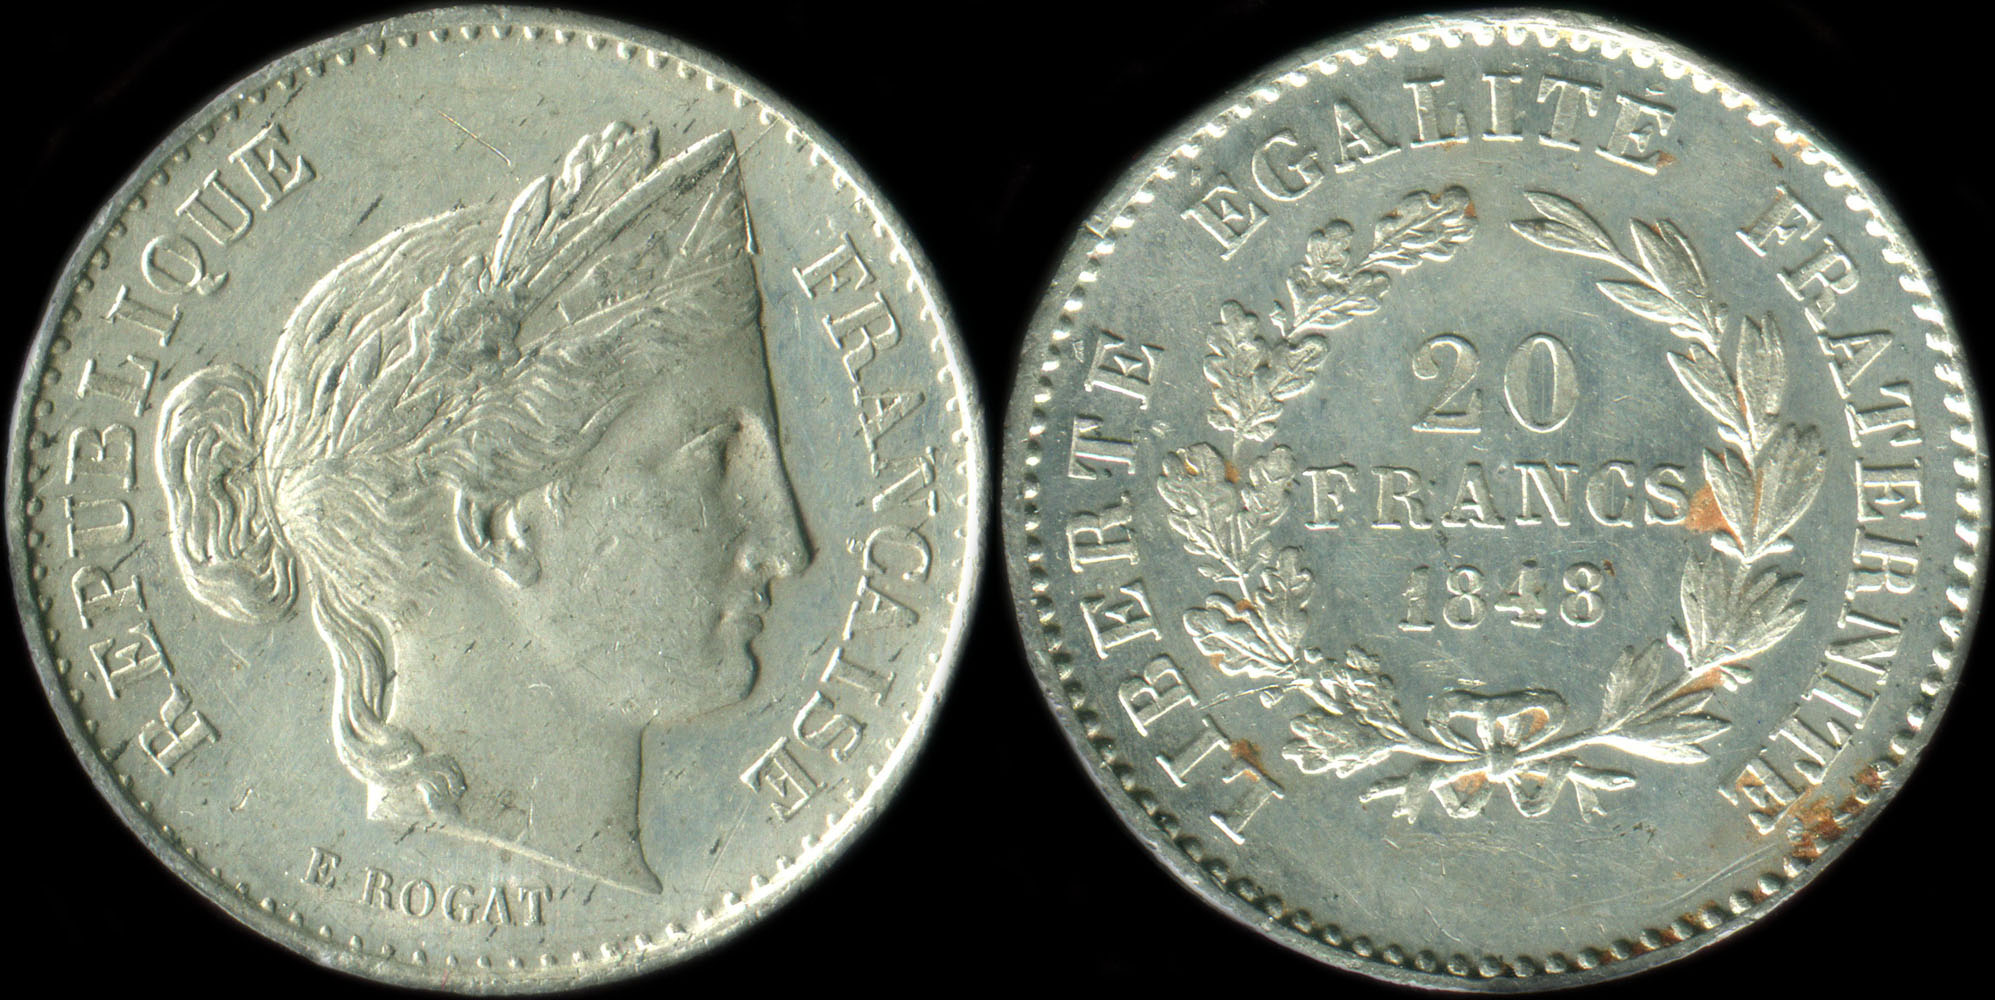 Pice de 20 francs 1848 - Concours de Rogat - cuivre